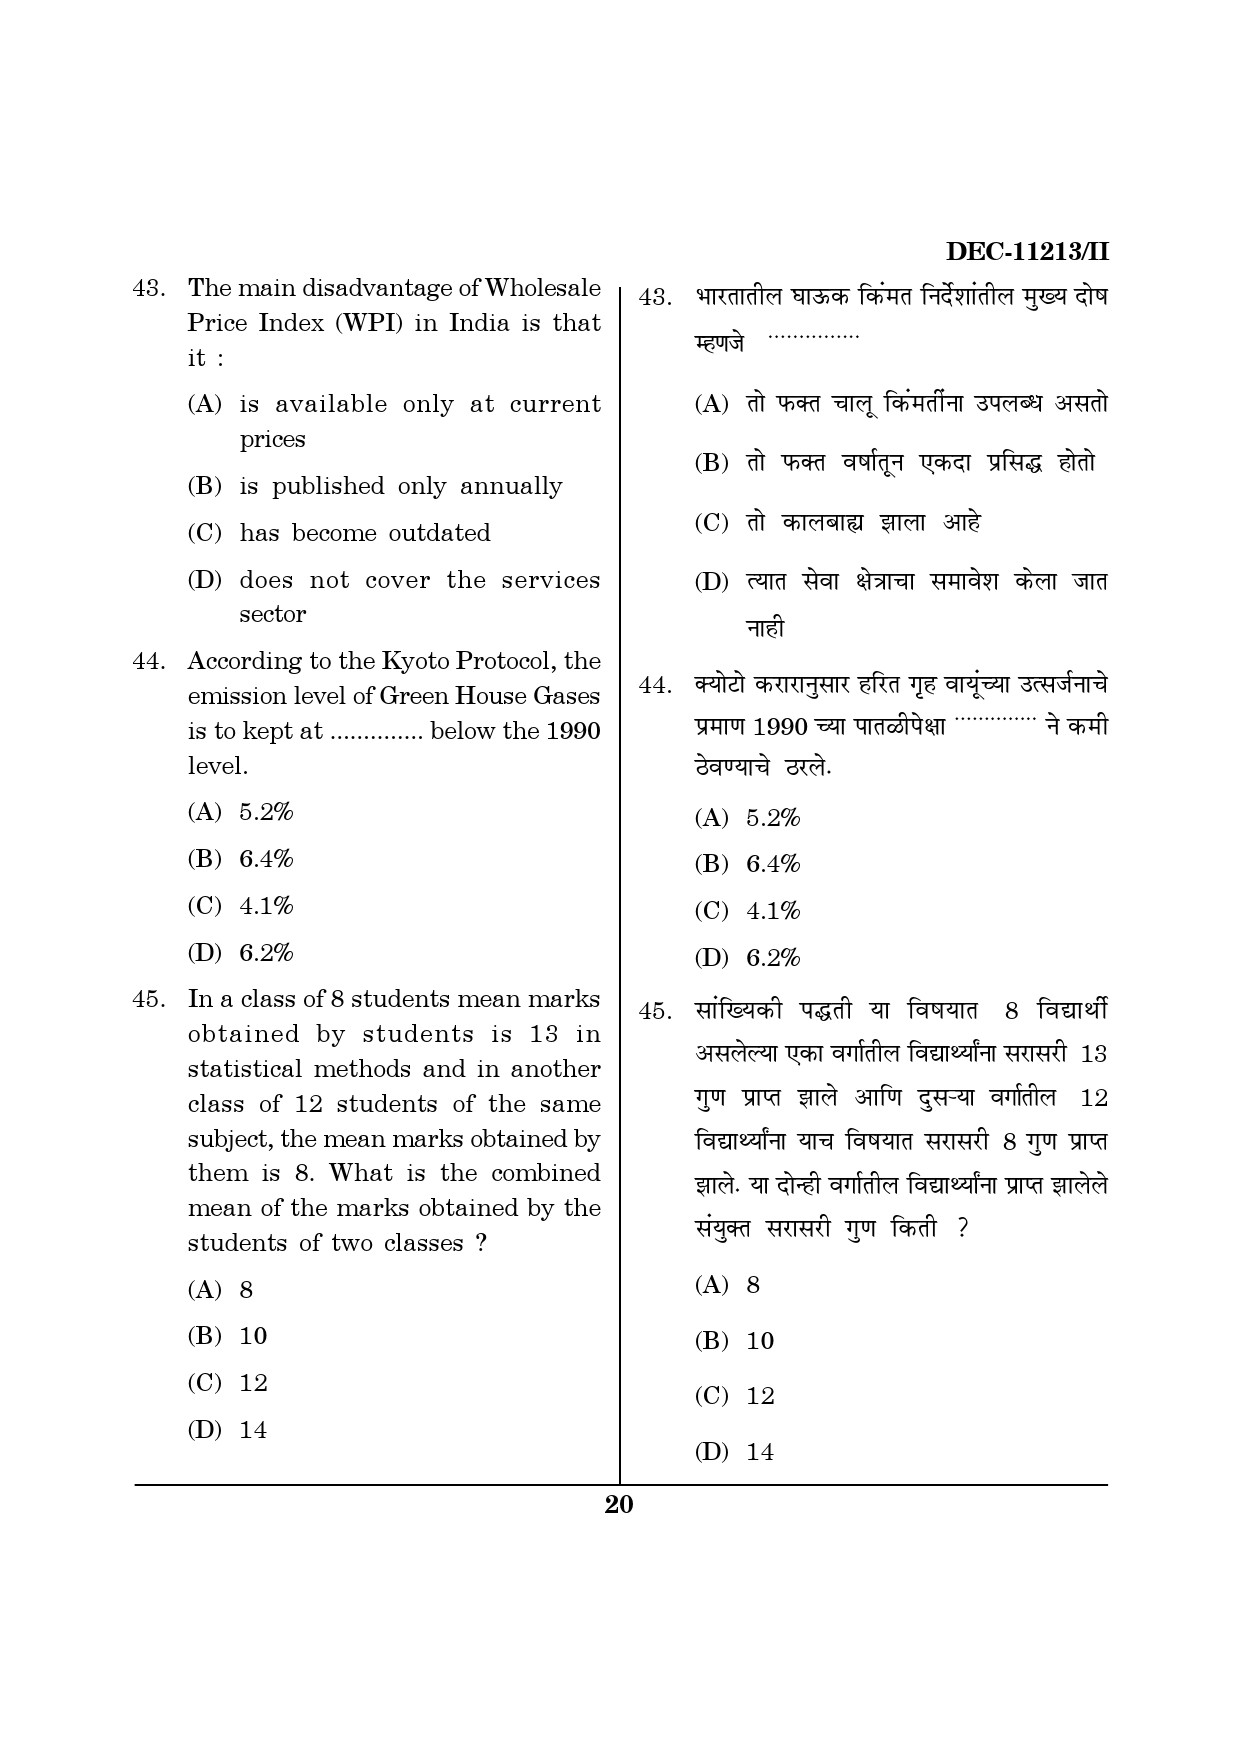 Maharashtra SET Economics Question Paper II December 2013 19